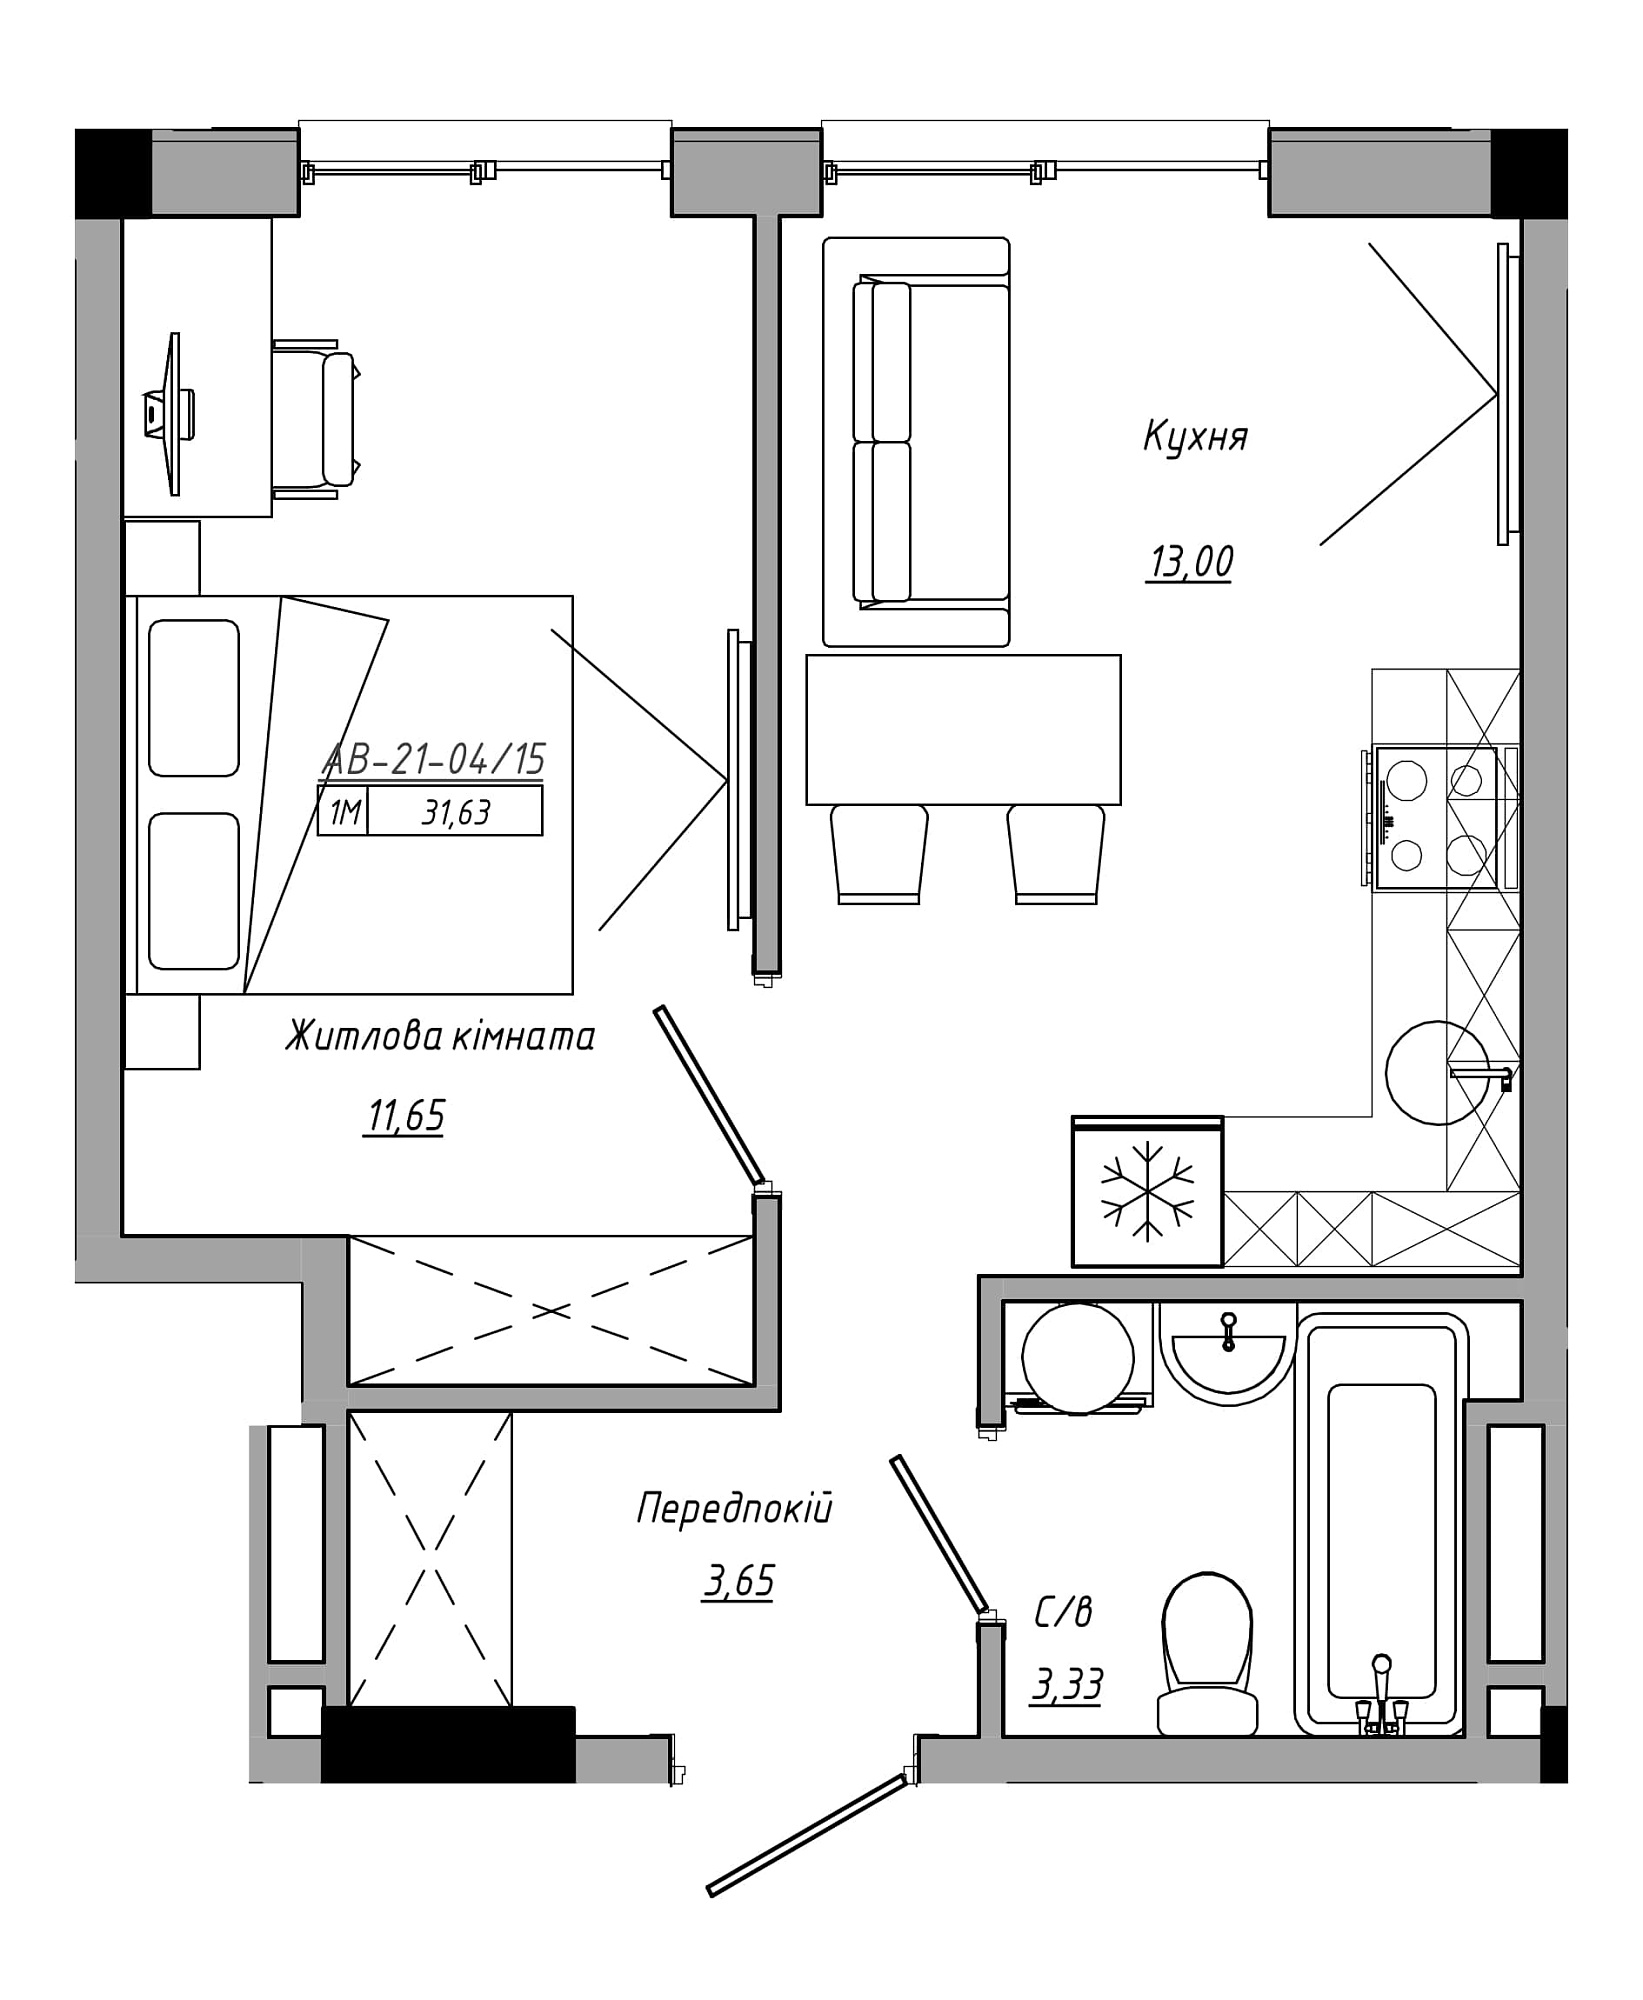 Планування 1-к квартира площею 31.63м2, AB-21-04/00015.